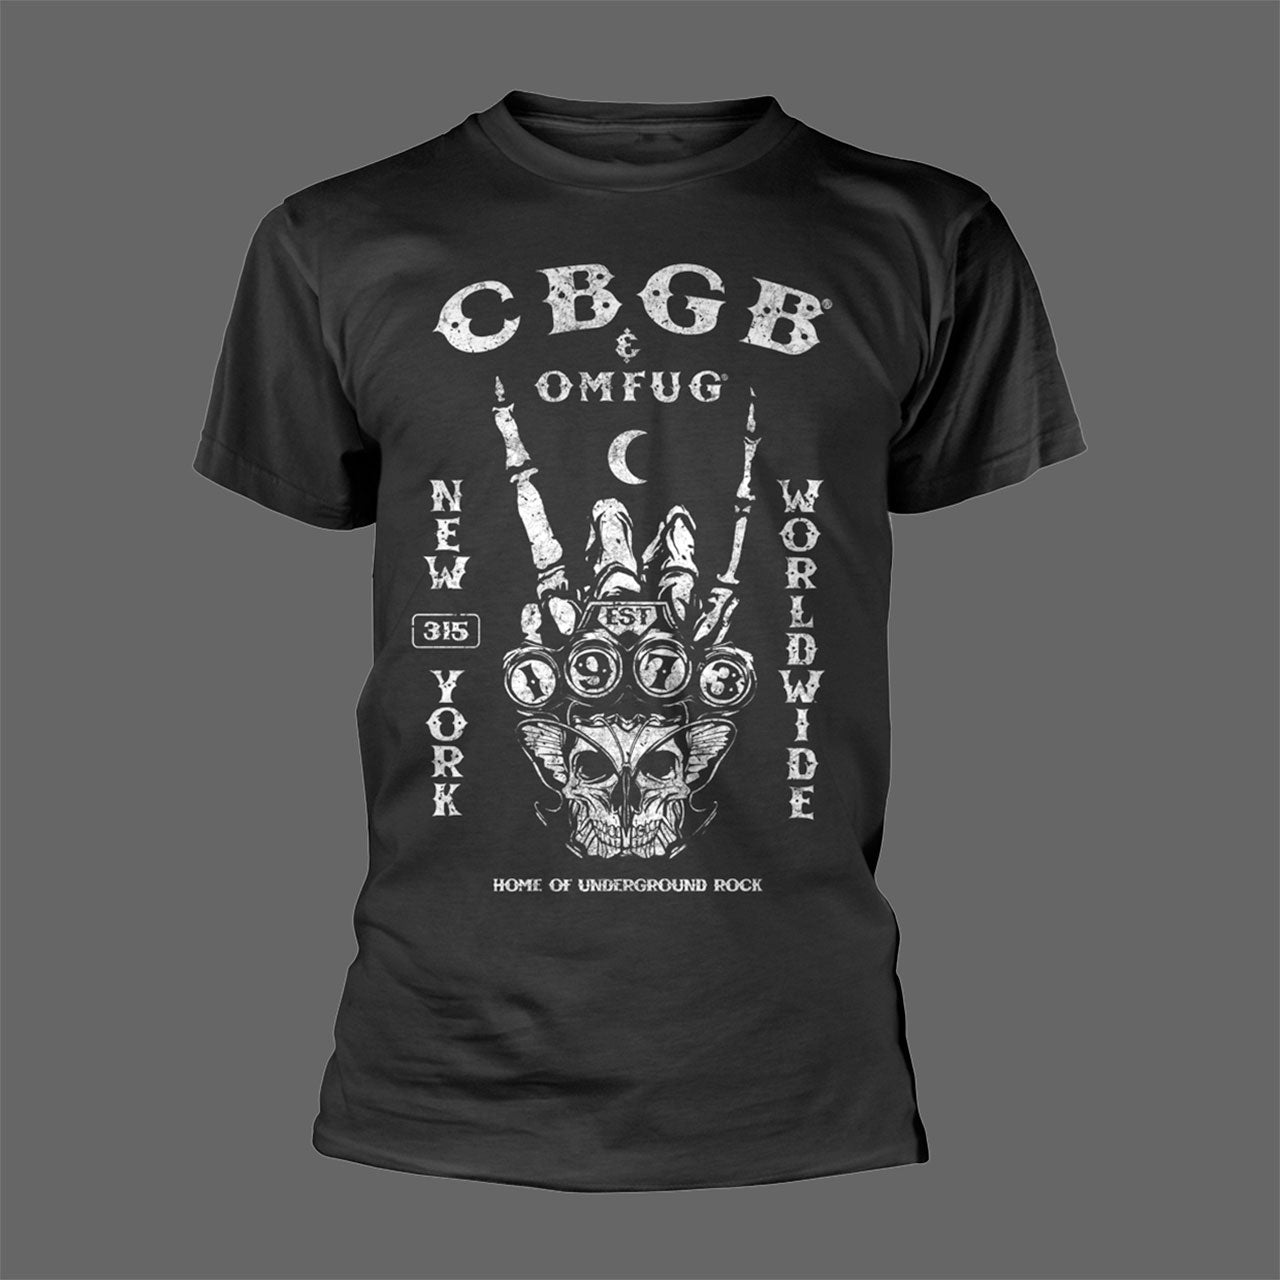 CBGB Est 1973 (T-Shirt)